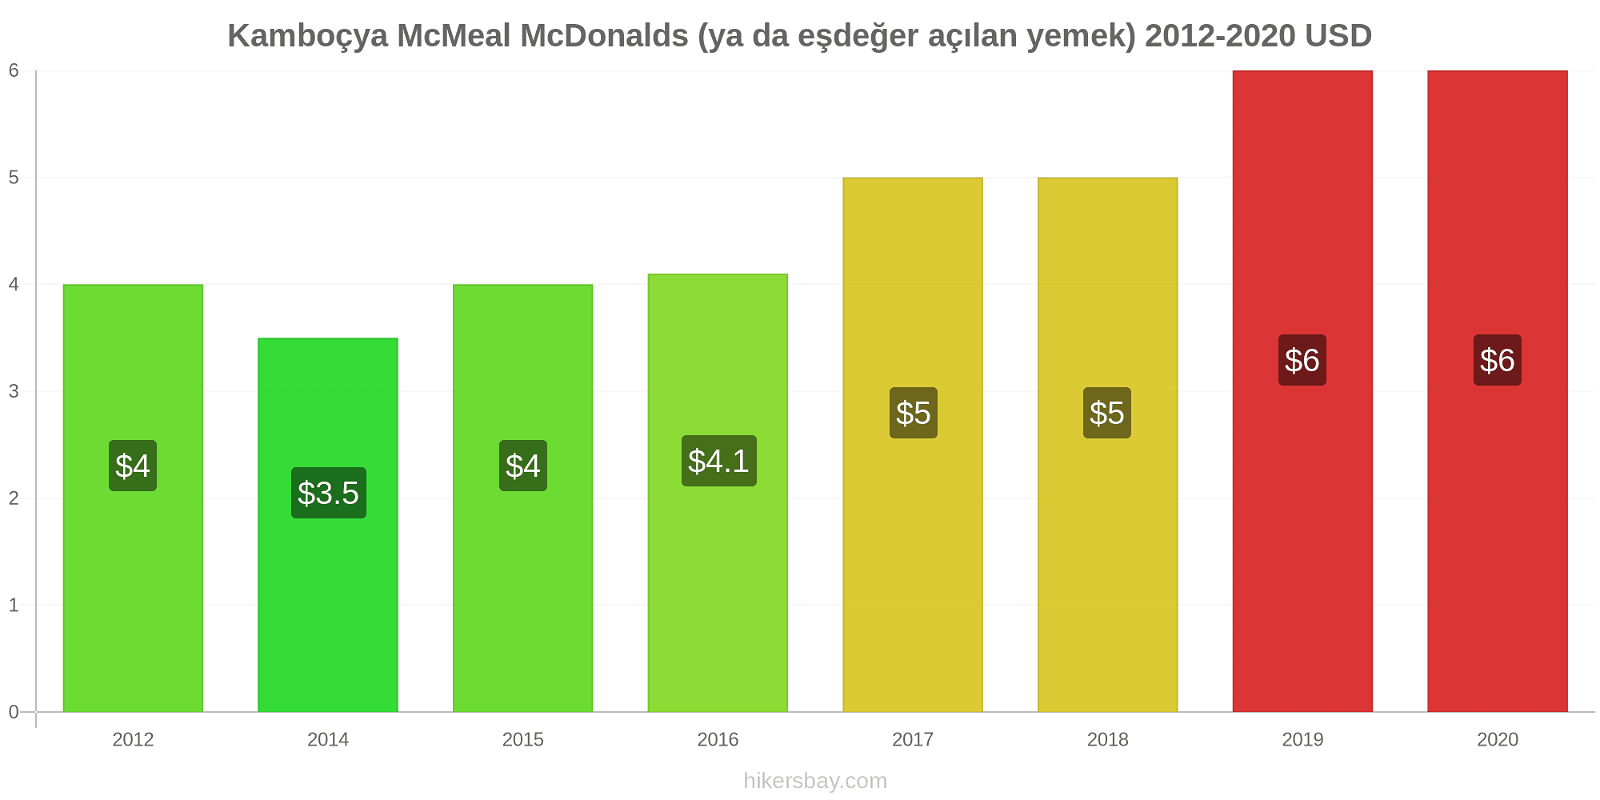 Kamboçya fiyat değişiklikleri McMeal McDonalds (ya da eşdeğer açılan yemek) hikersbay.com